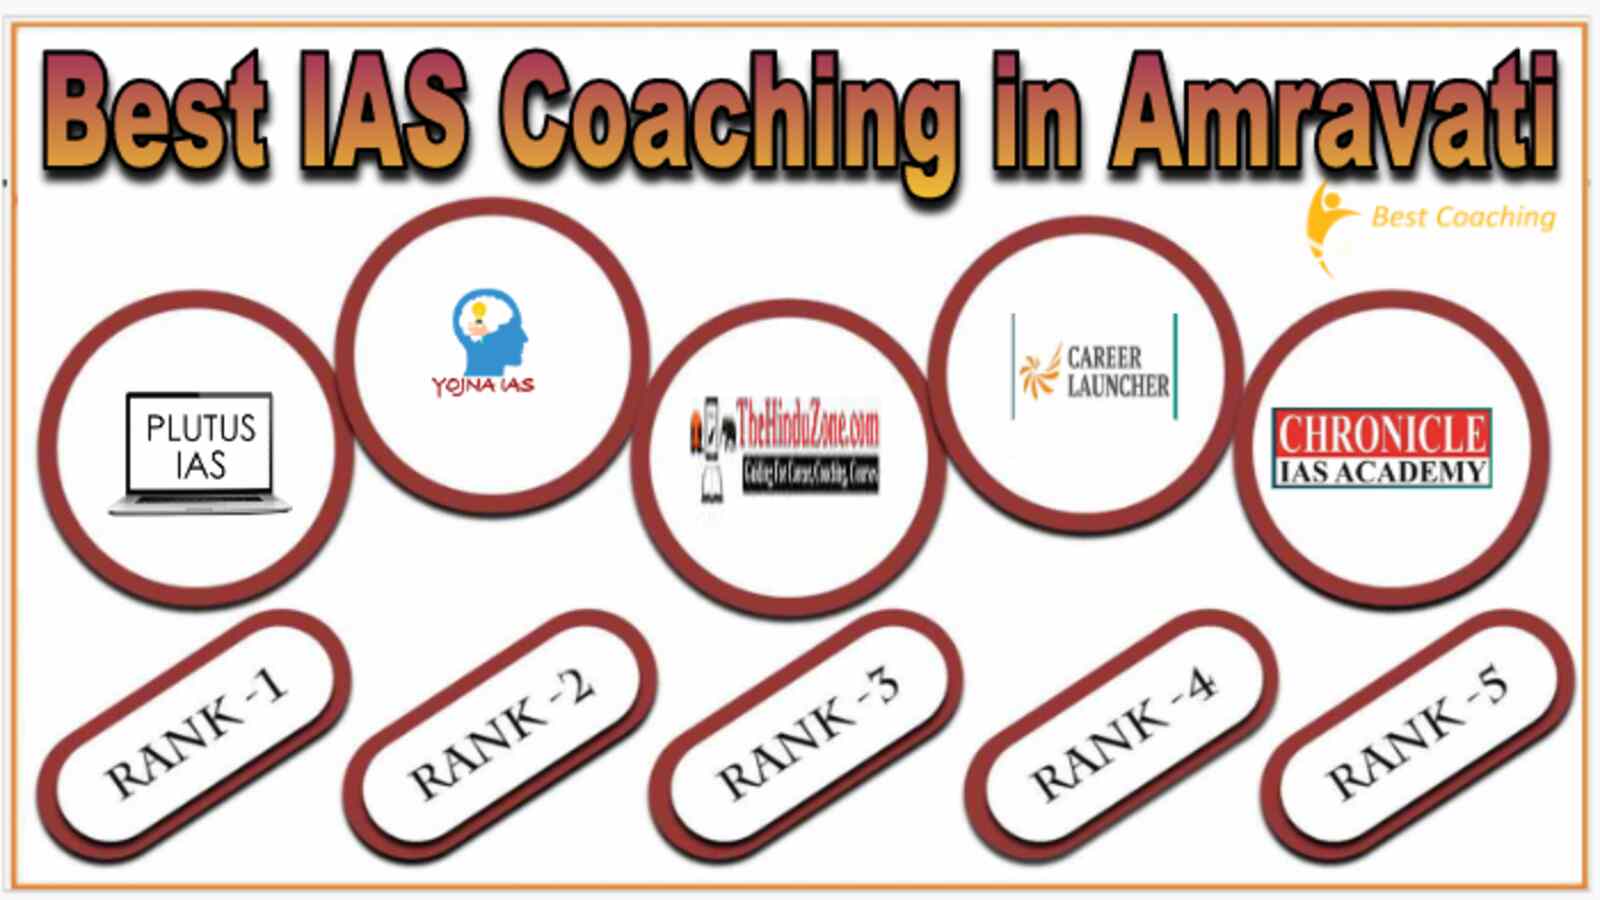 Best IAS Coaching Institute in Amravati